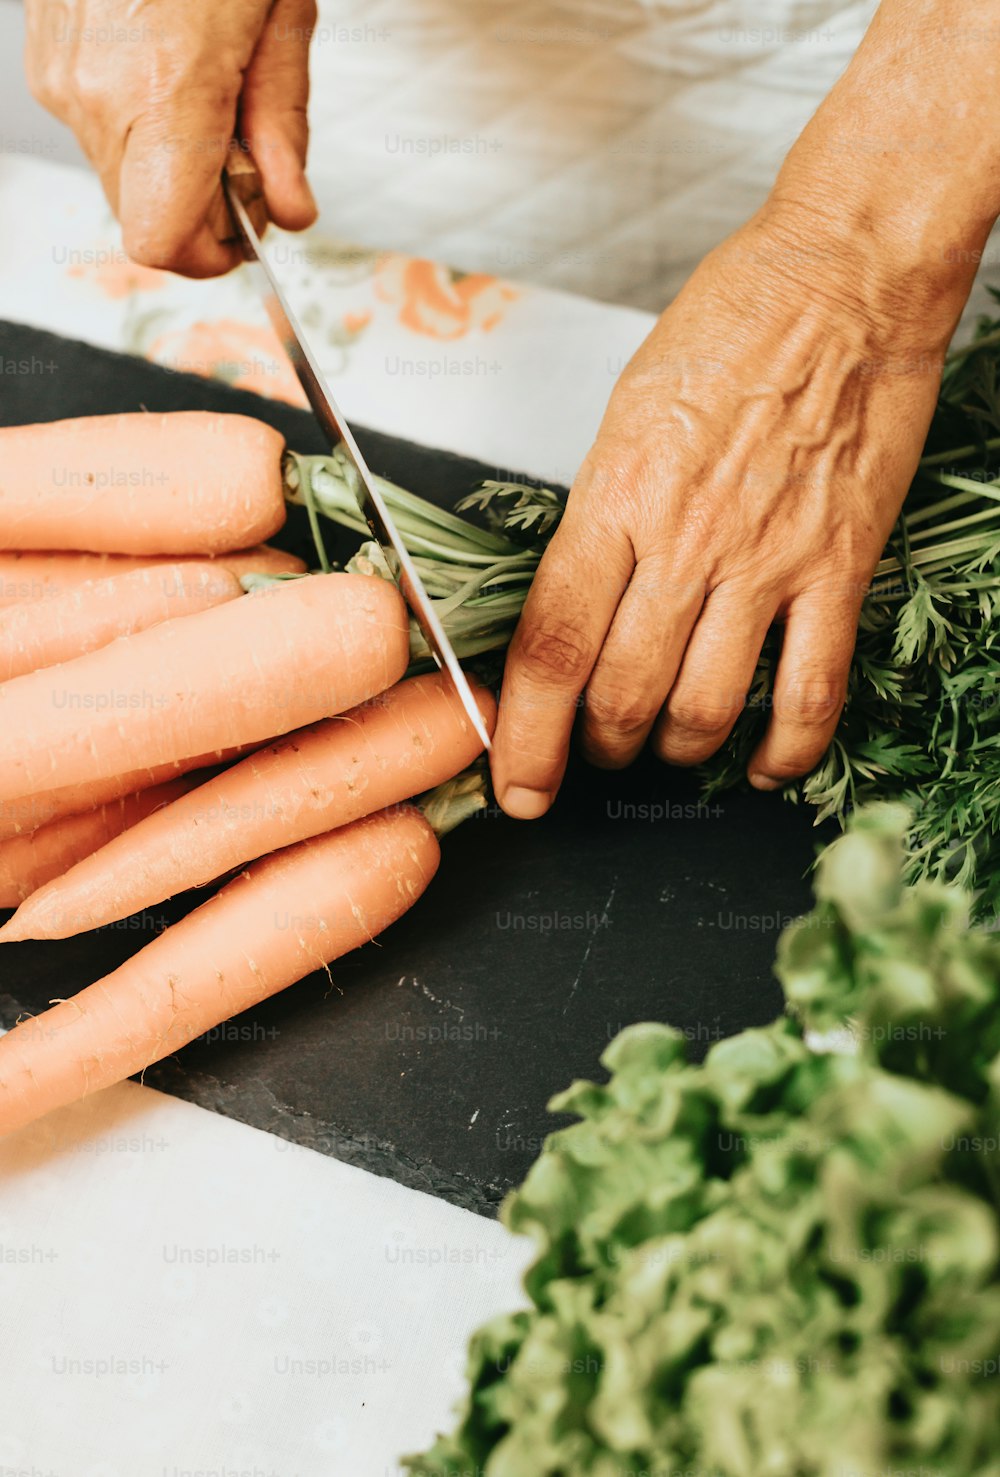 une personne coupant des carottes avec une paire de ciseaux